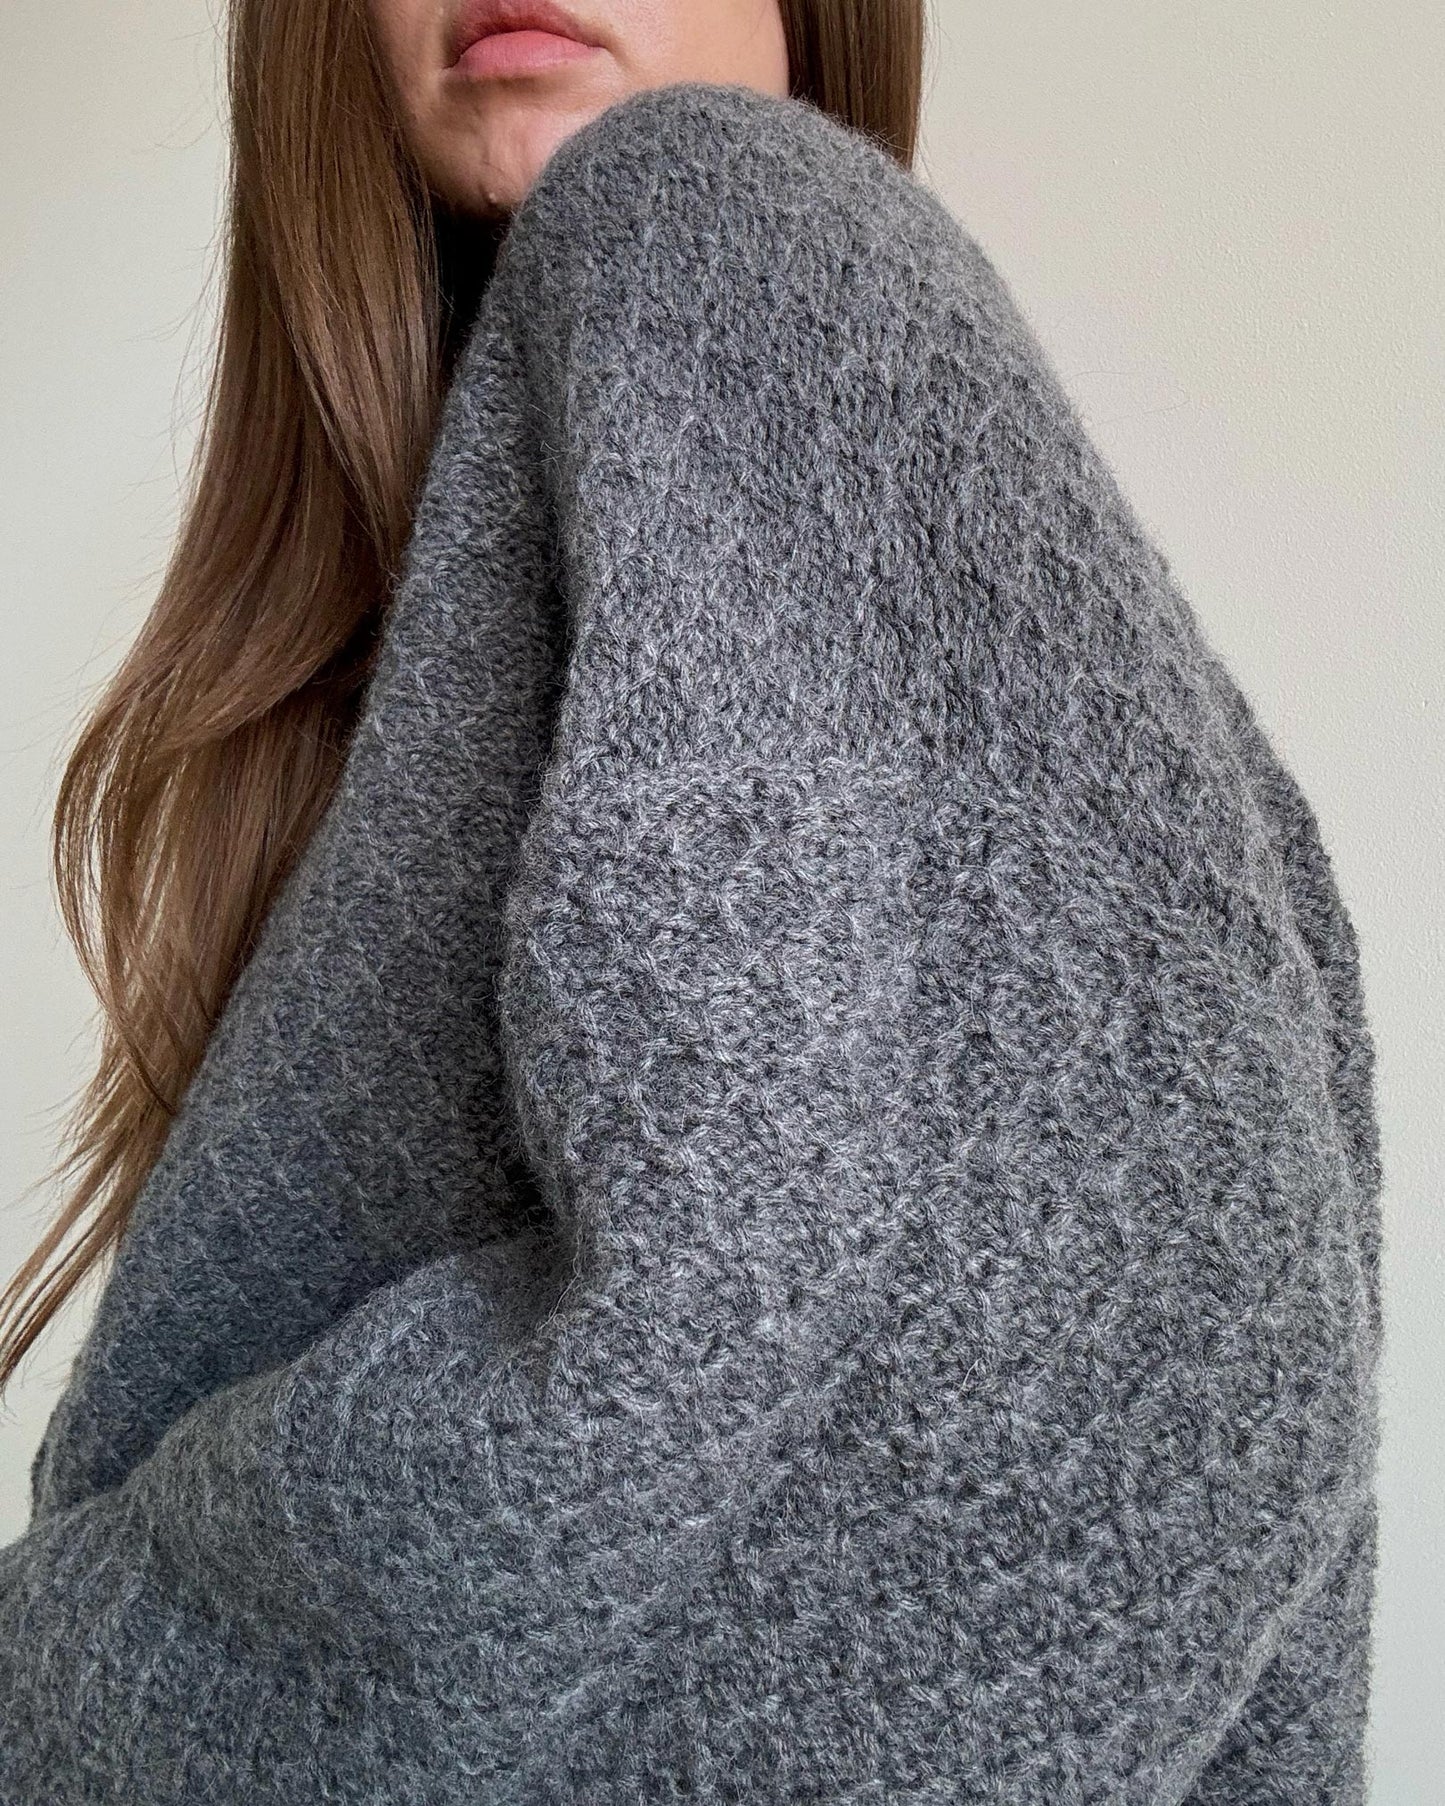 Szkic do dziergania wełnianego swetra Francesca z okrągłym dekoltem dla minimalistycznego wyglądu.